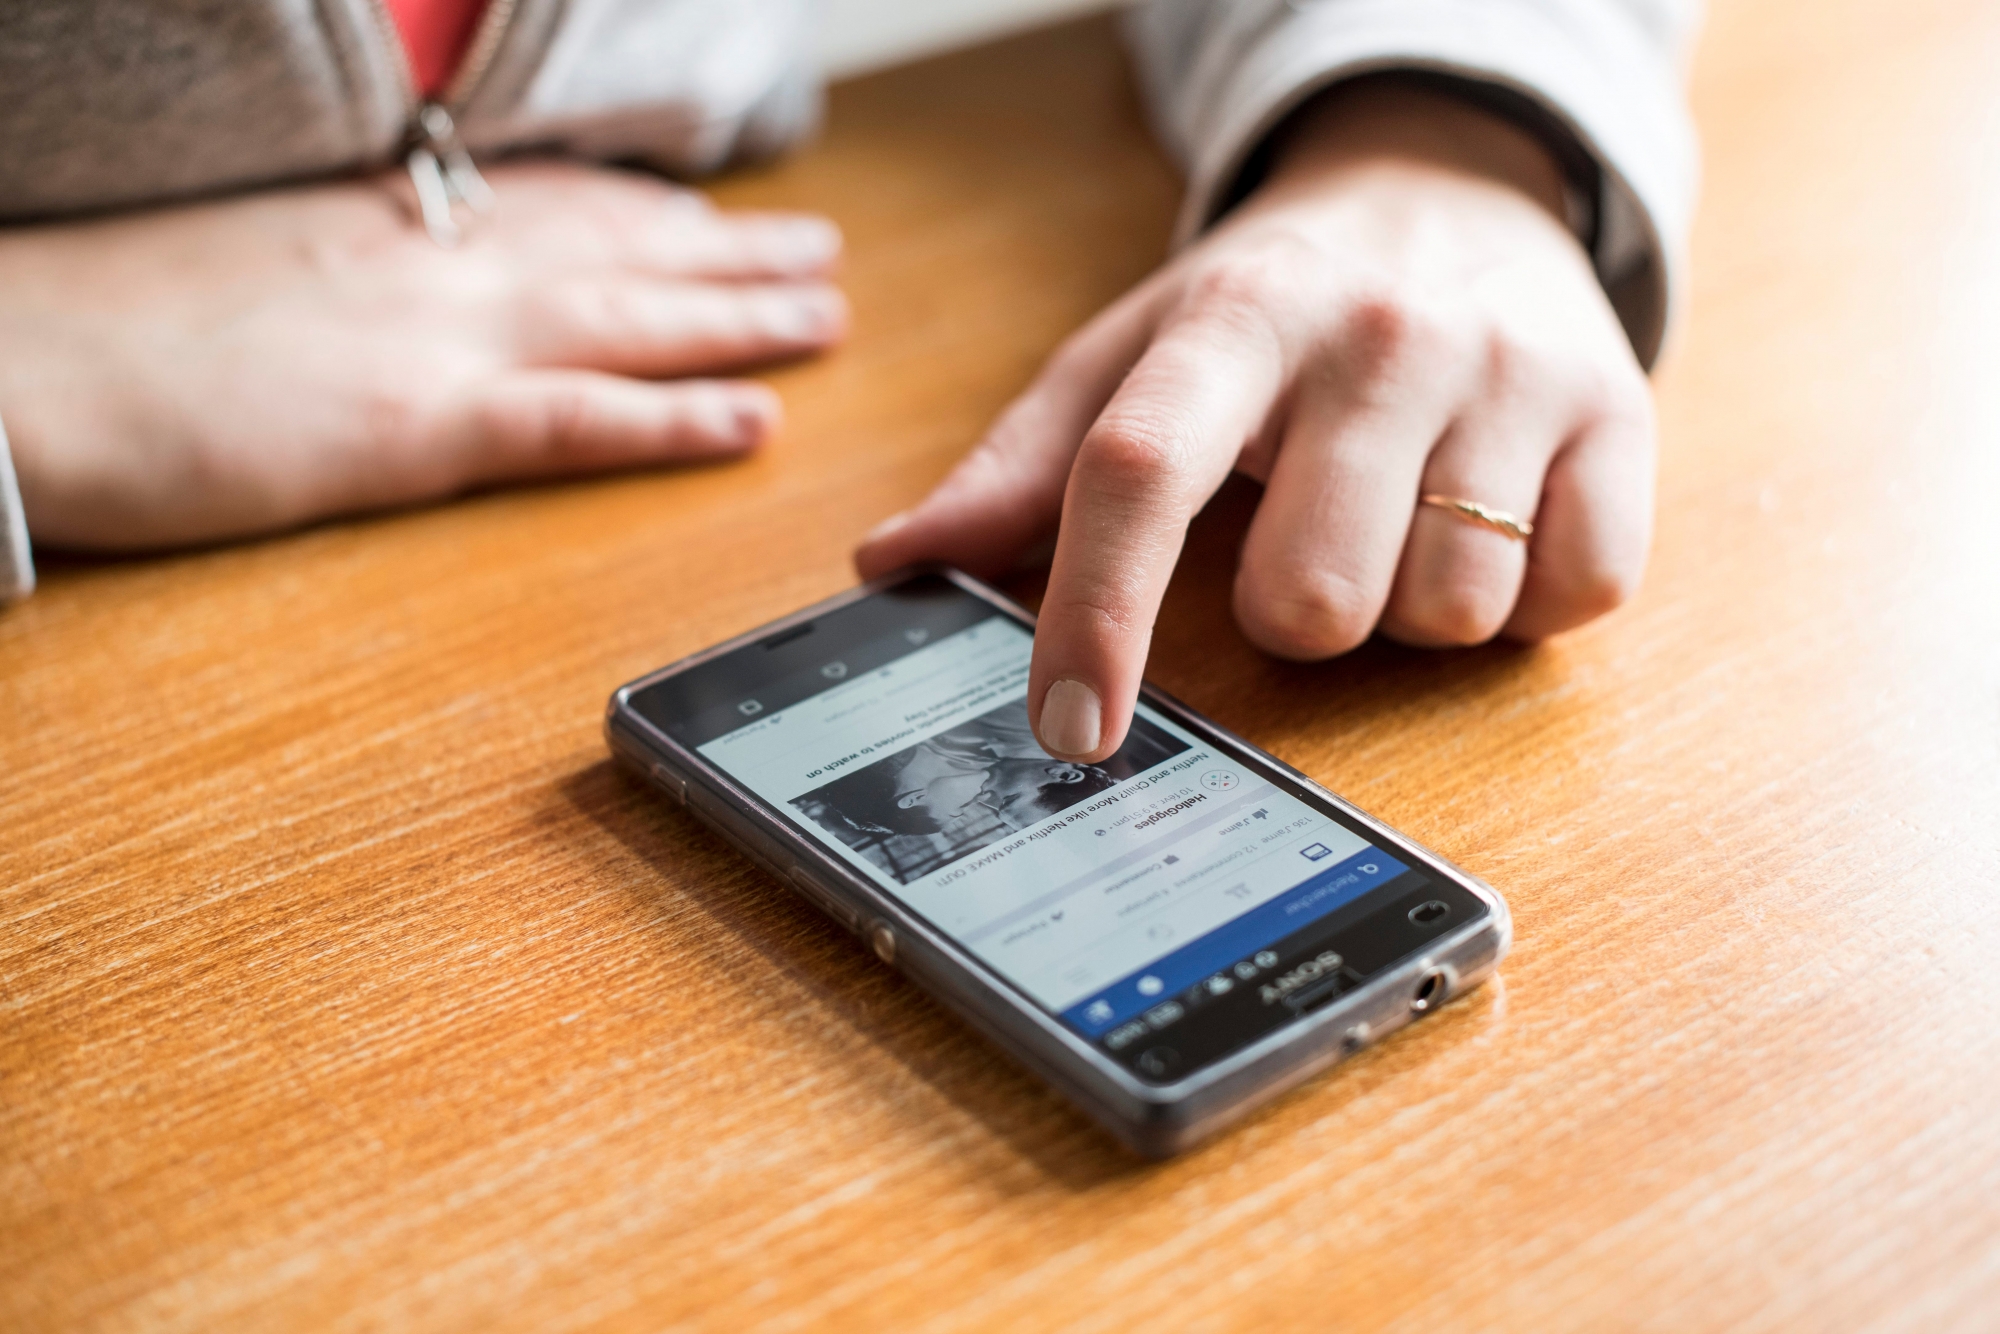 Une jeune femme utilise son telepone portable 
Images d'illustration sur les smartphones et les reseaux sociaux.

Neuchatel, le 11 fevrier 2016 
Photo : Lucas Vuitel SMARTPHONE